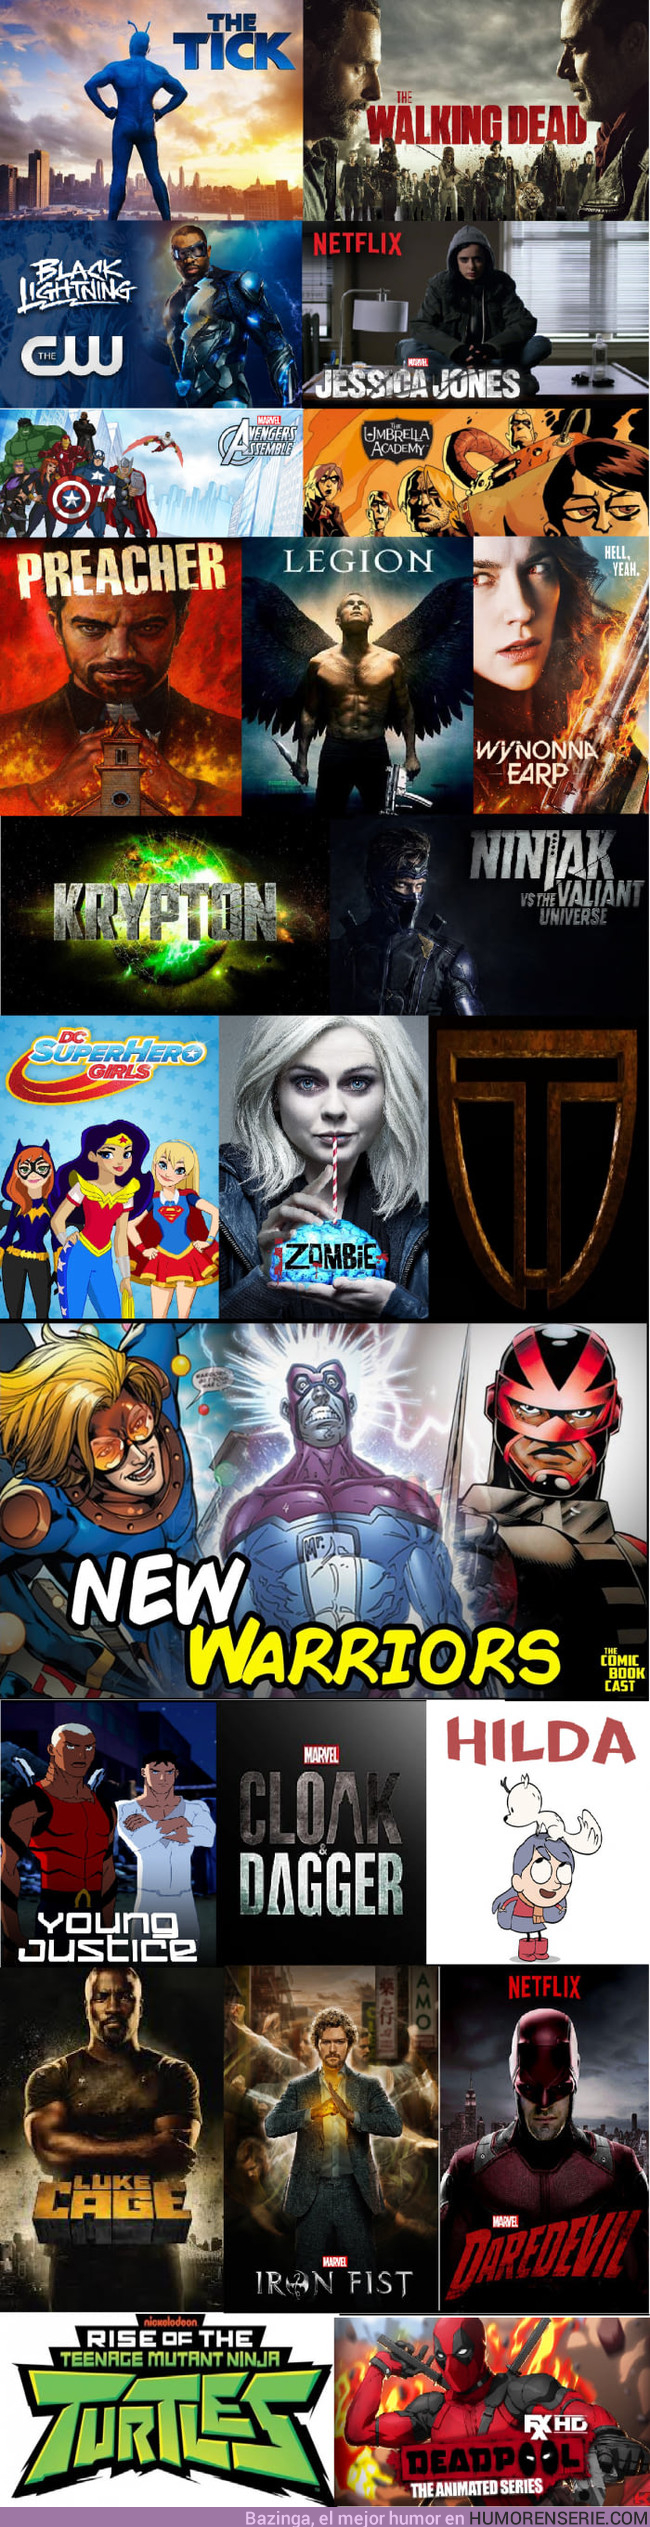 20859 - Todas las series basadas en cómics que saldrán en 2018